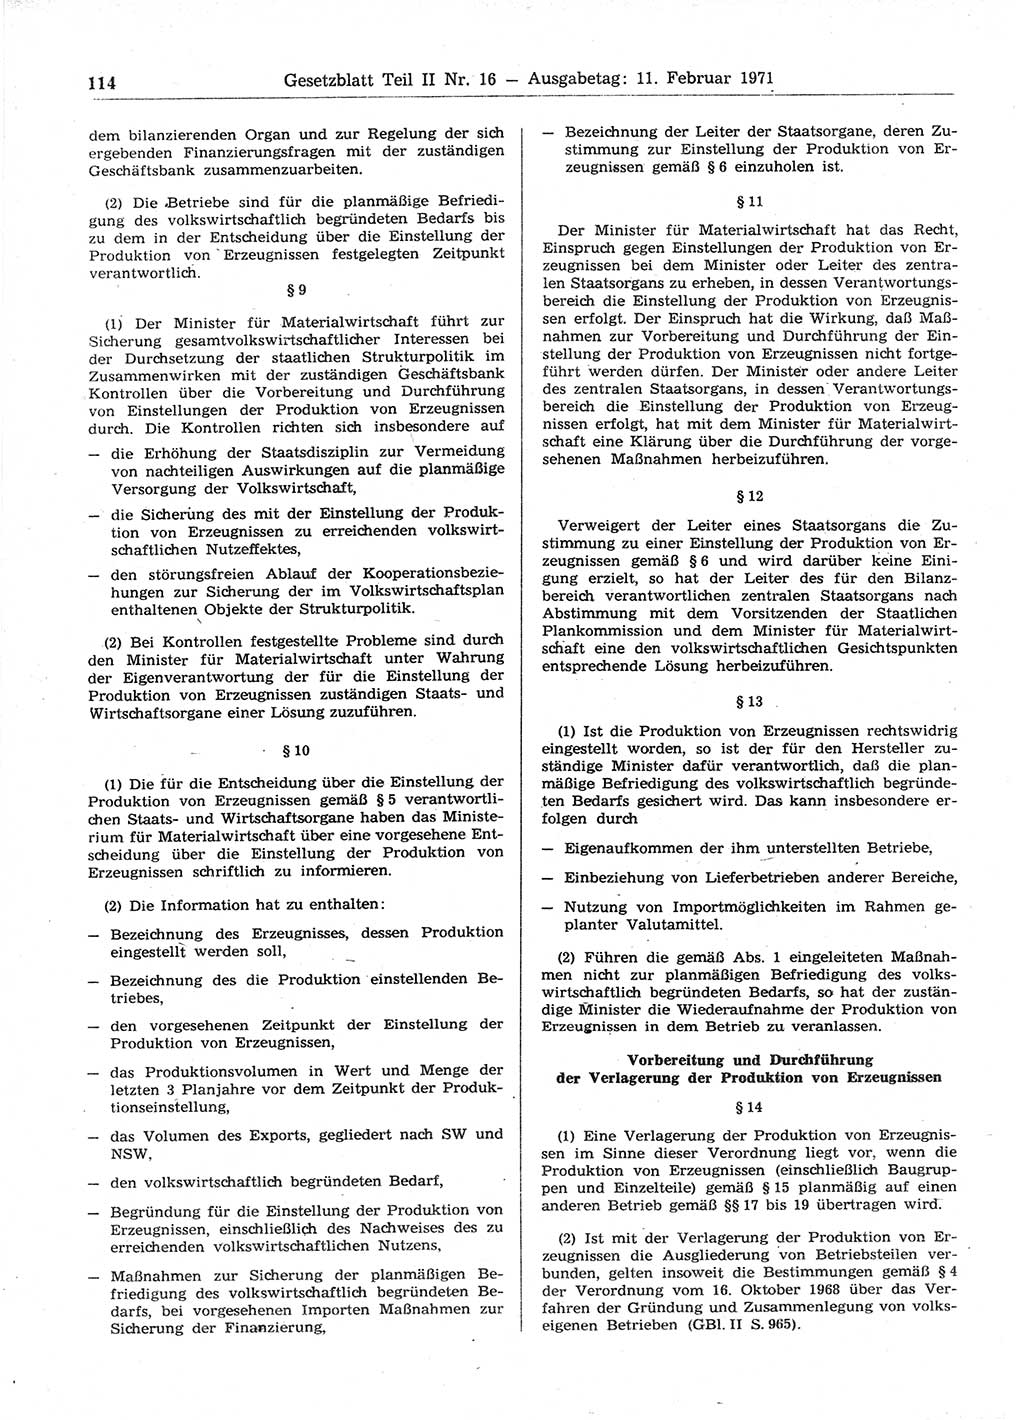 Gesetzblatt (GBl.) der Deutschen Demokratischen Republik (DDR) Teil ⅠⅠ 1971, Seite 114 (GBl. DDR ⅠⅠ 1971, S. 114)